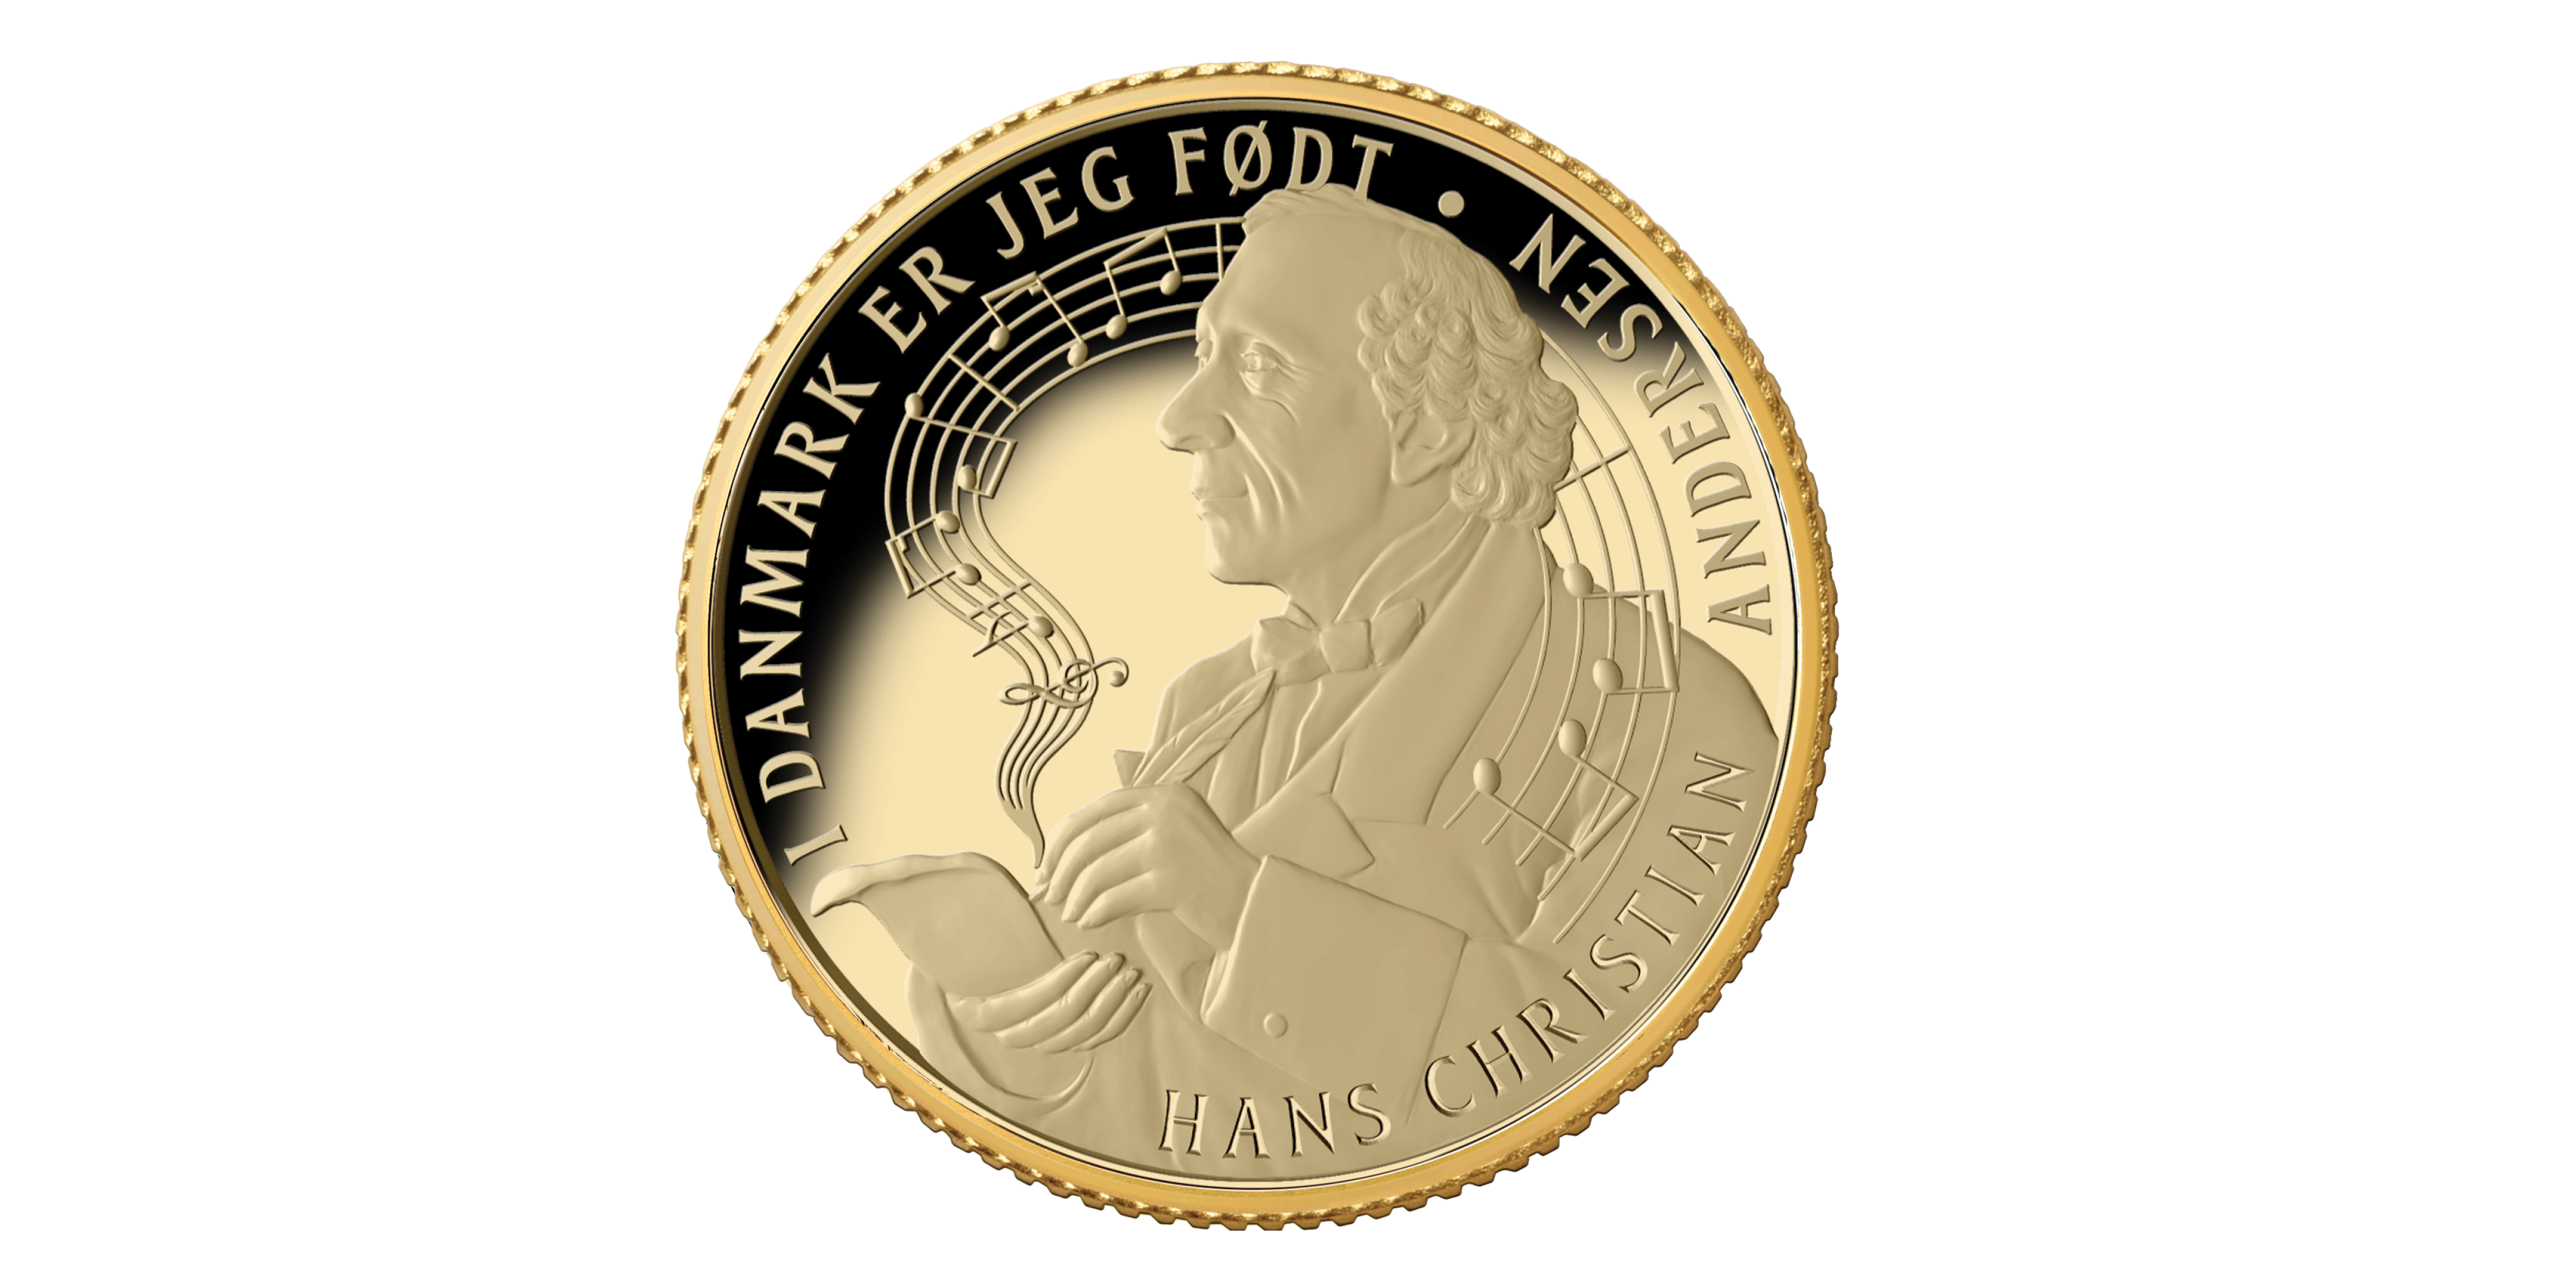   Køb vores helt nye og eksklusive guldmønt med i 24 karat guld er i bedste samlerkvalitet. Kun hos Mønthuset Danmark. 